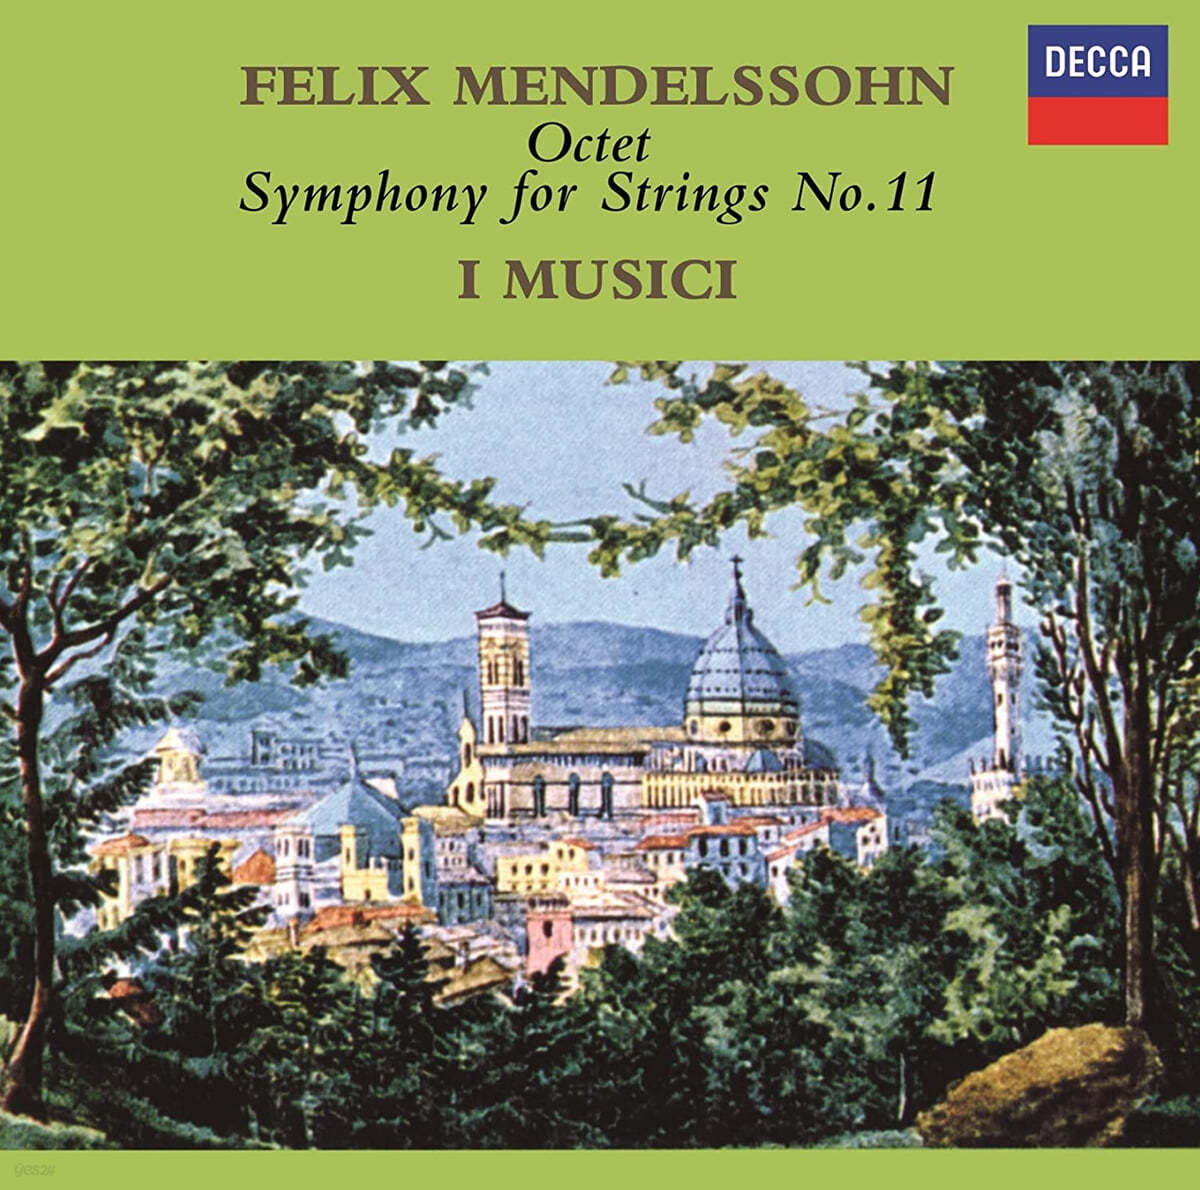 I Musici 멘델스존: 팔중주, 현악 교향곡 11번 (Mendelssohn: Octet, Symphony For Strings No.11) 